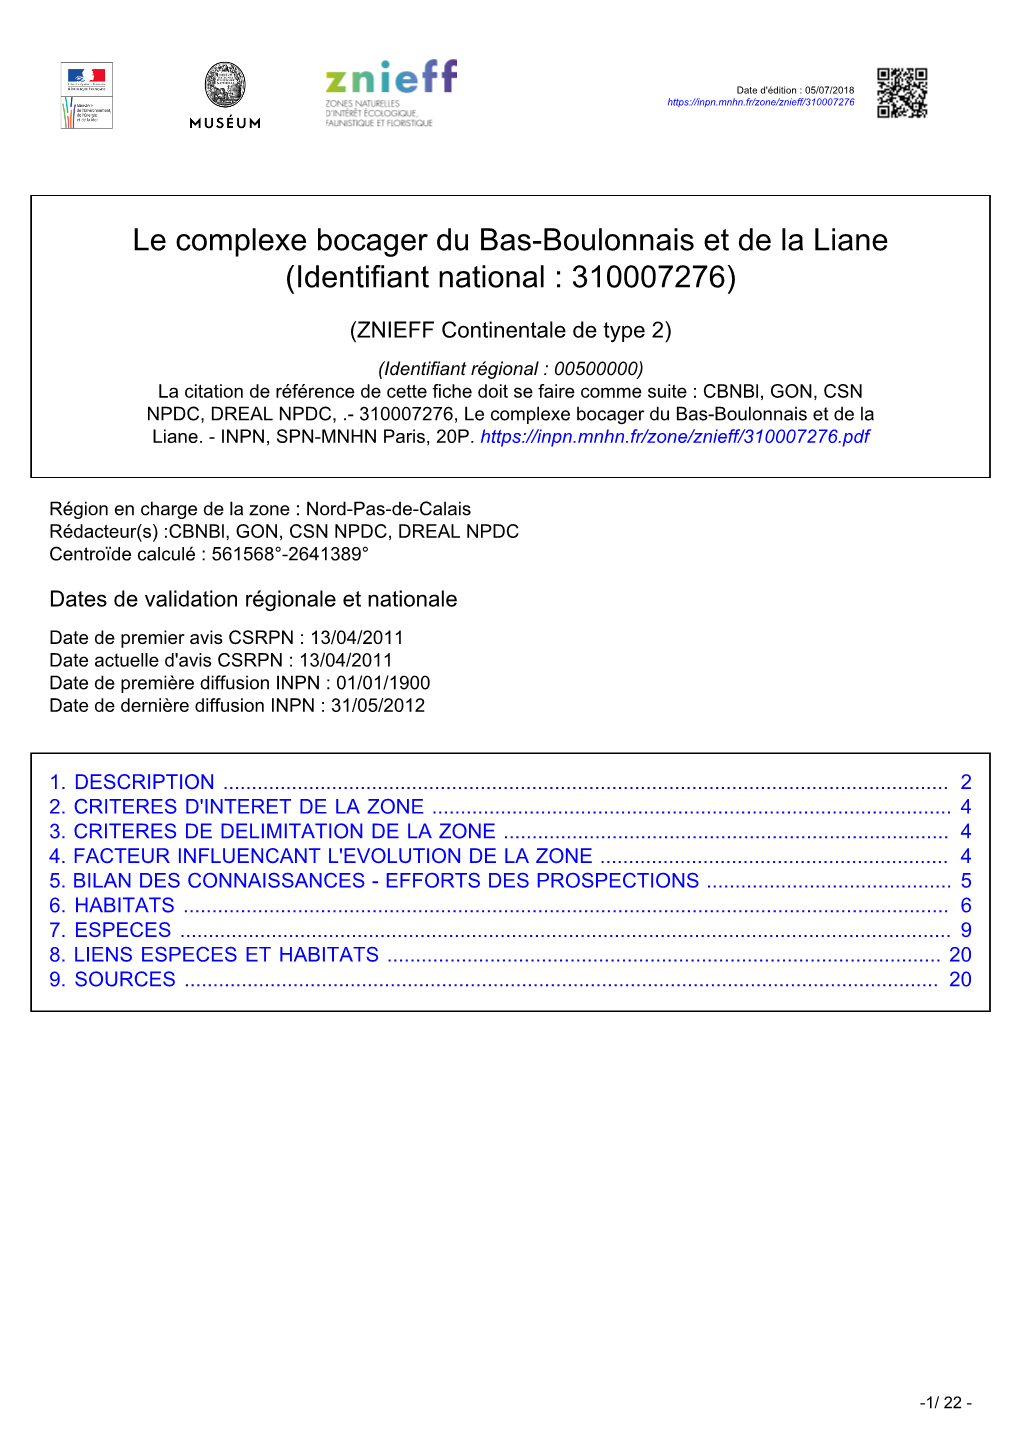 Le Complexe Bocager Du Bas-Boulonnais Et De La Liane (Identifiant National : 310007276)